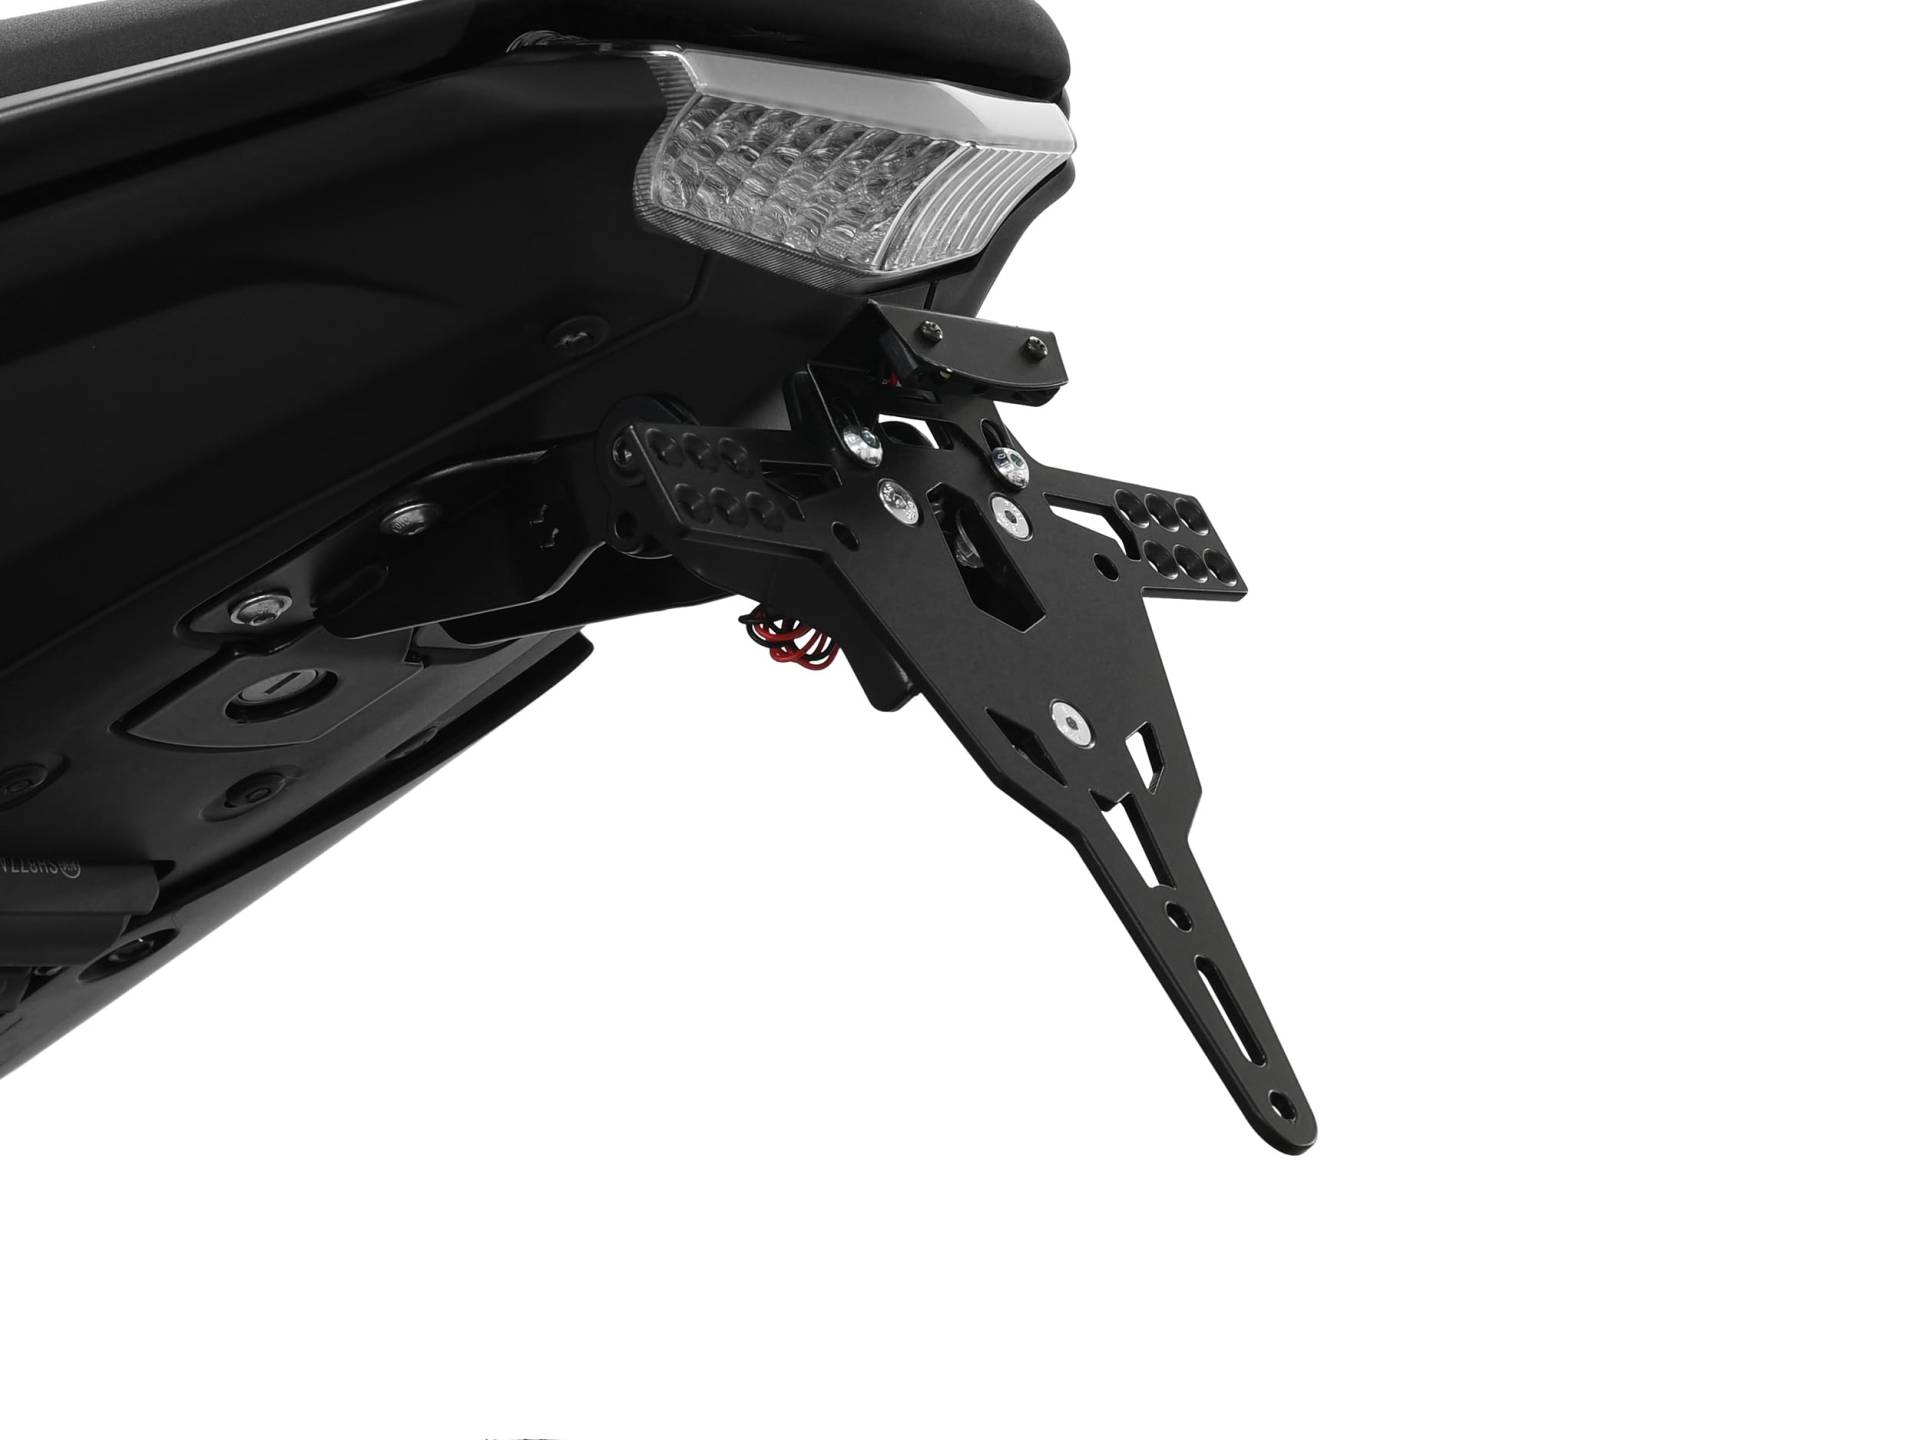 ZIEGER Pro Motorrad Kennzeichenhalter kompatibel mit: Yamaha MT-125 von IBEX